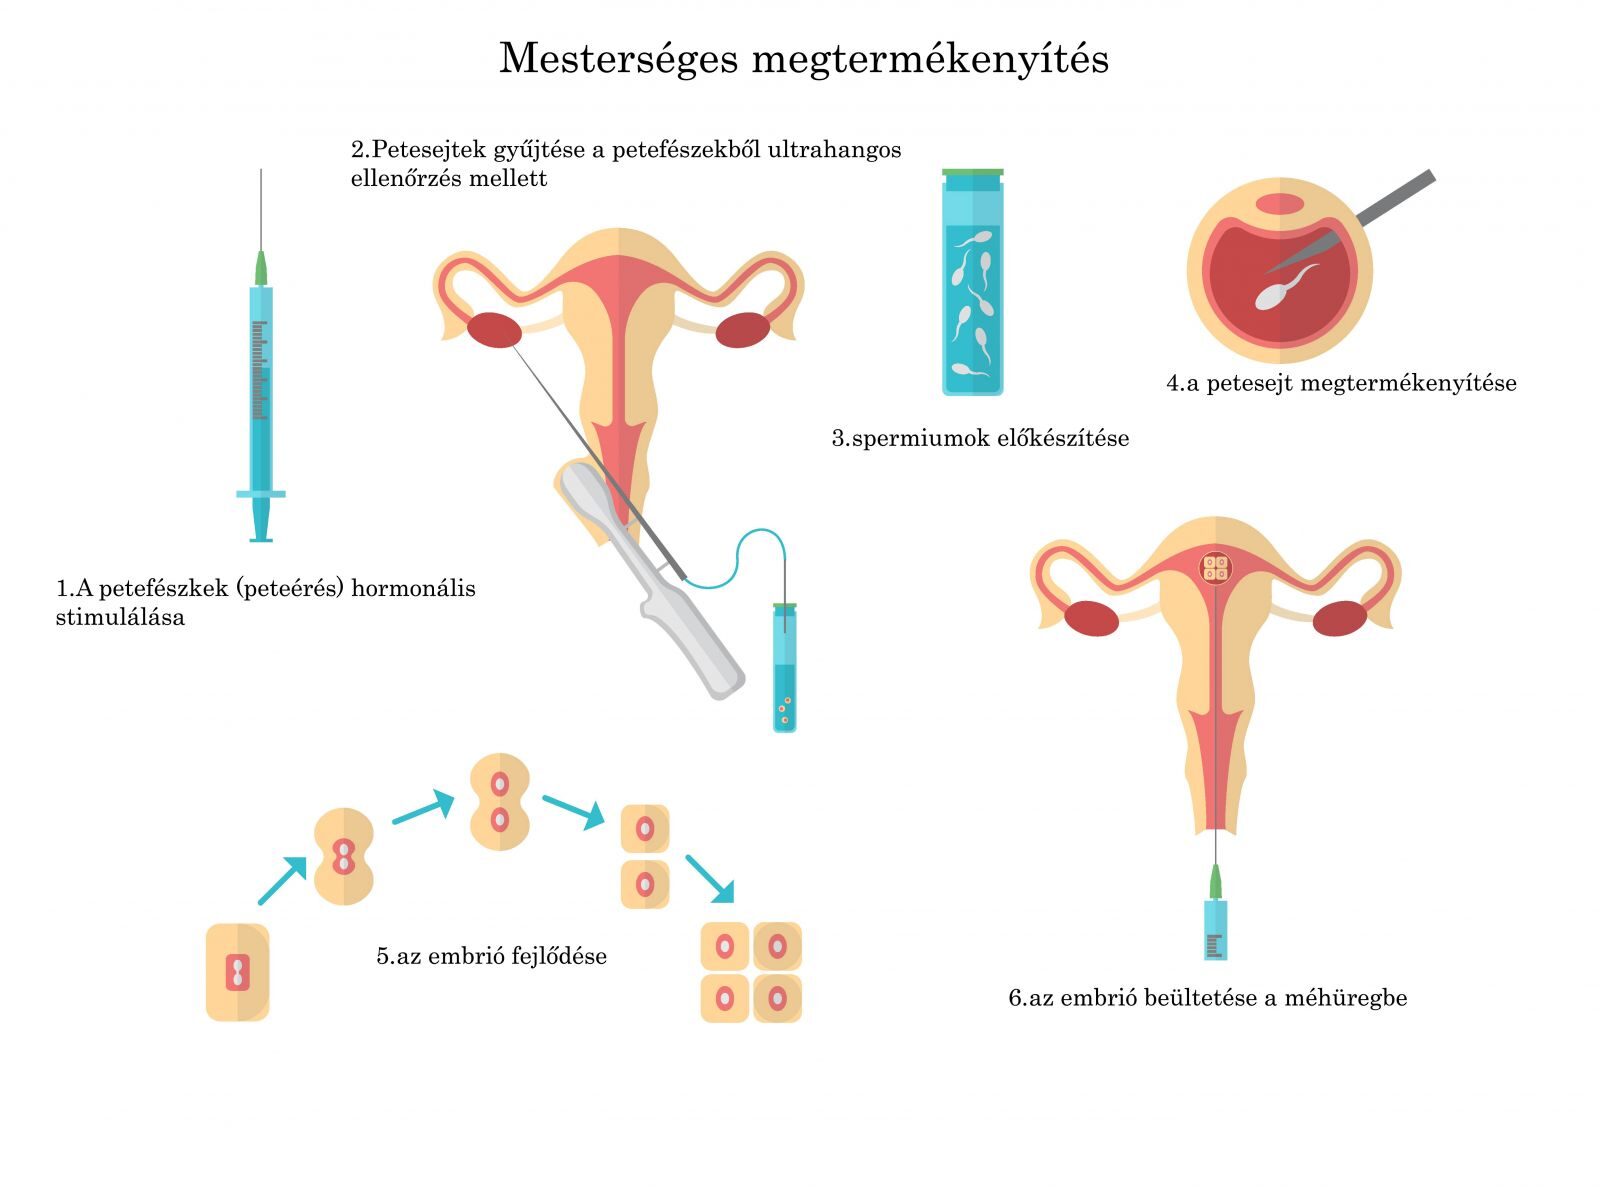 Lombikbébi - egyetlen embrió beültetése hatásosabb